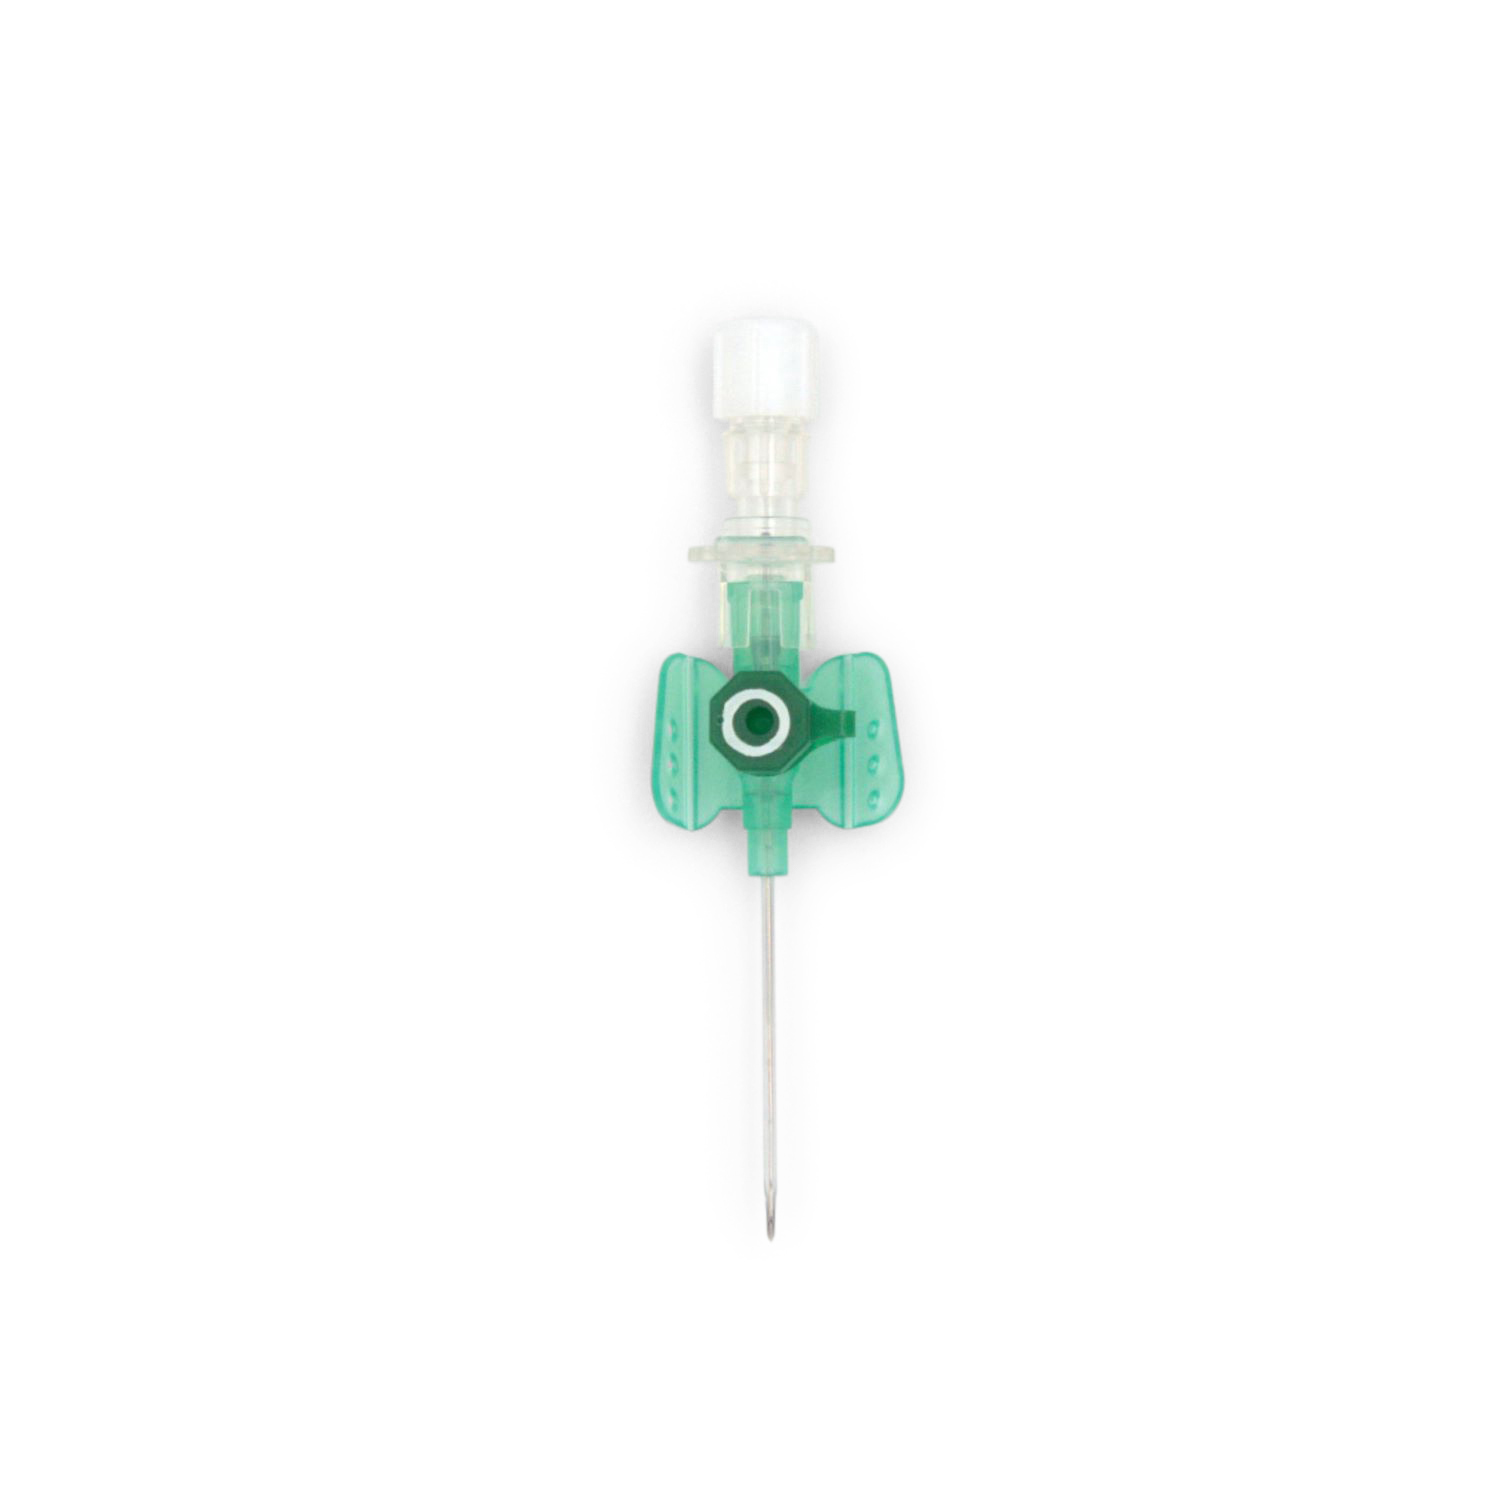 Vasofix® Safety Sicherheitsvenenverweilkanüle (1,30 x 33 mm G 18 grün (mit weißem Ring))